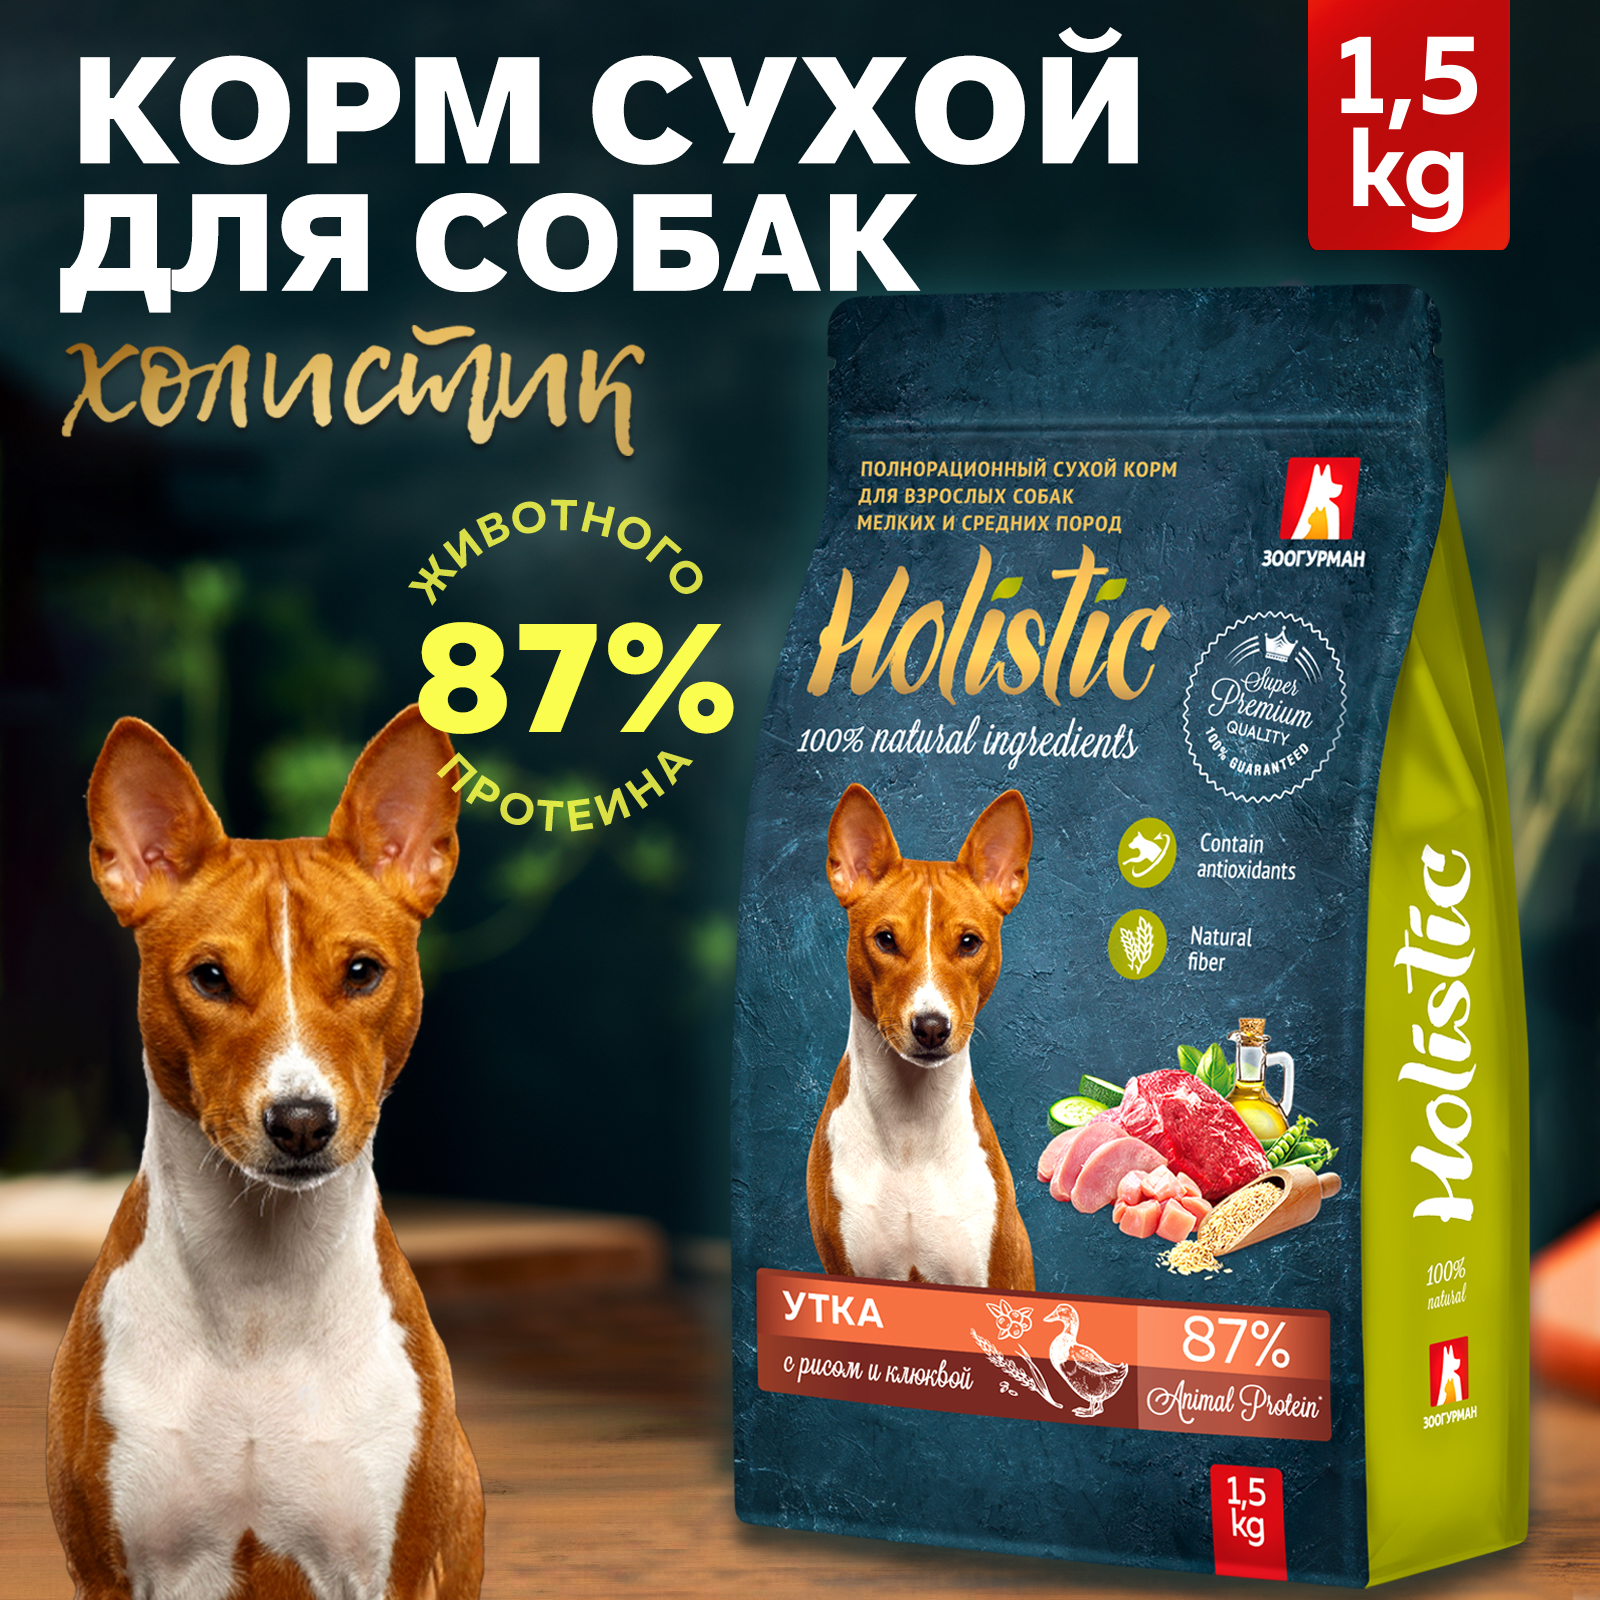 Сухой корм для собак Зоогурман Holistic, утка с рисом и клюквой, 1,5 кг